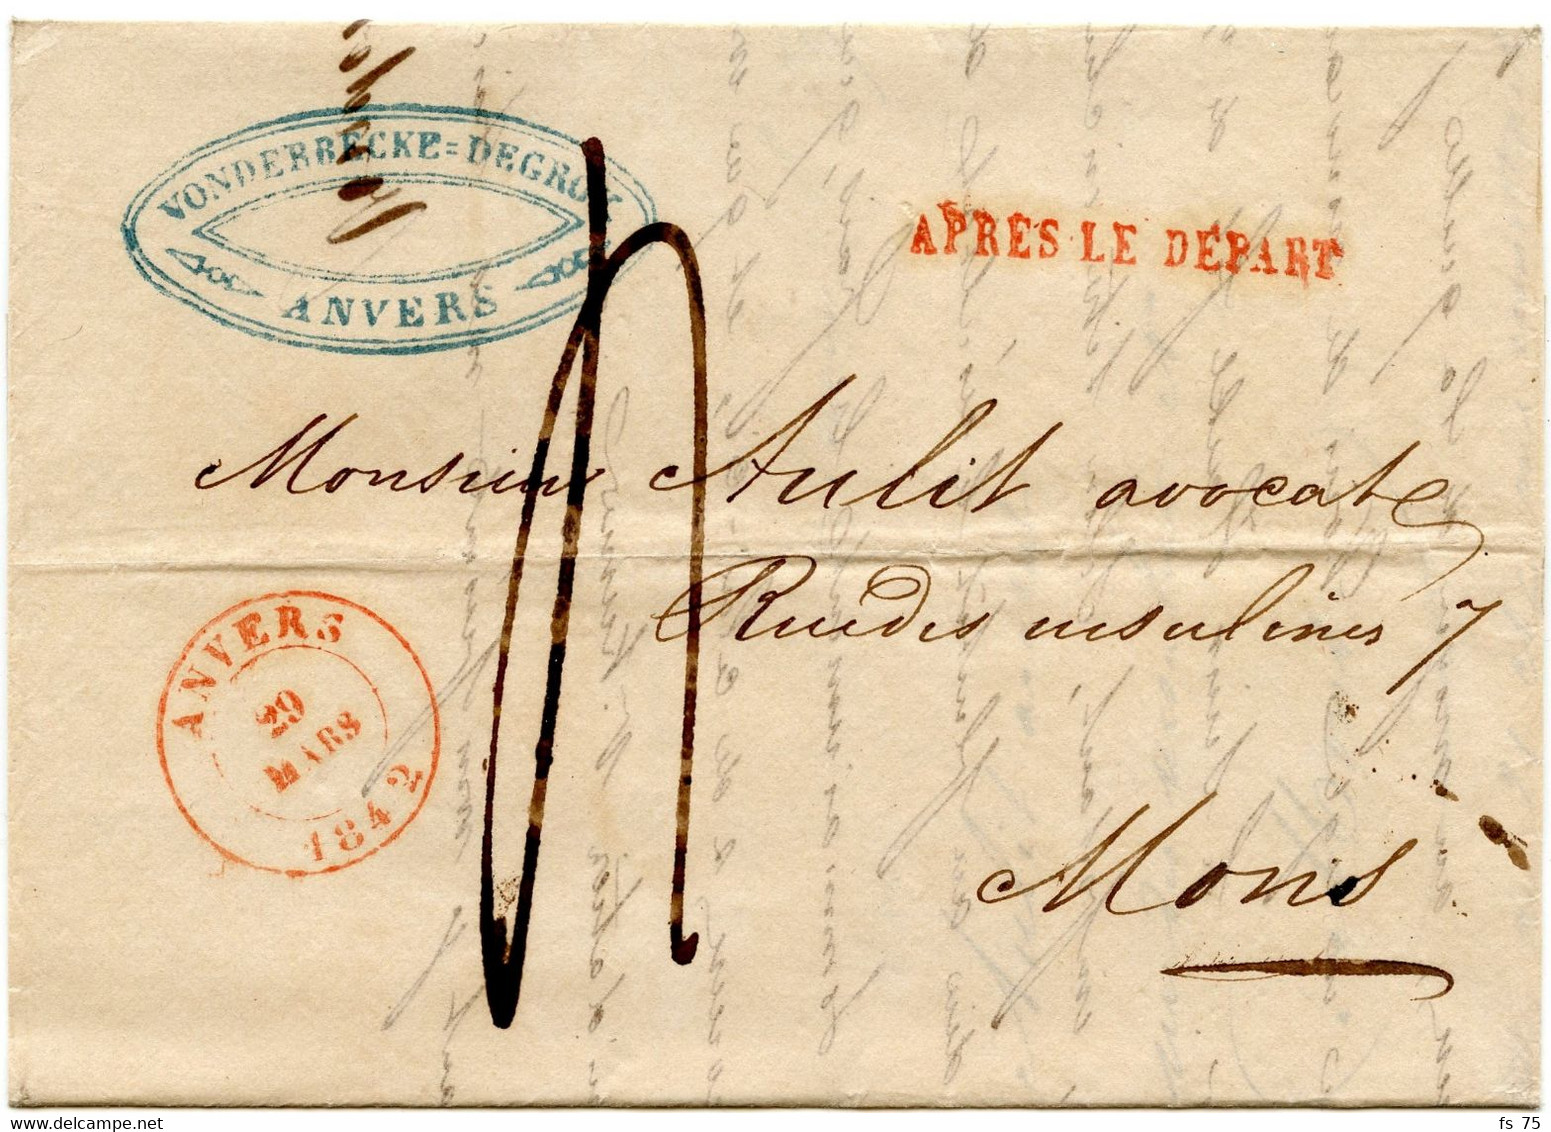 BELGIQUE - ANVERS + APRES LE DEPART SUR LETTRE AVEC CORRESPONDANCE, 1842 - 1830-1849 (Belgique Indépendante)